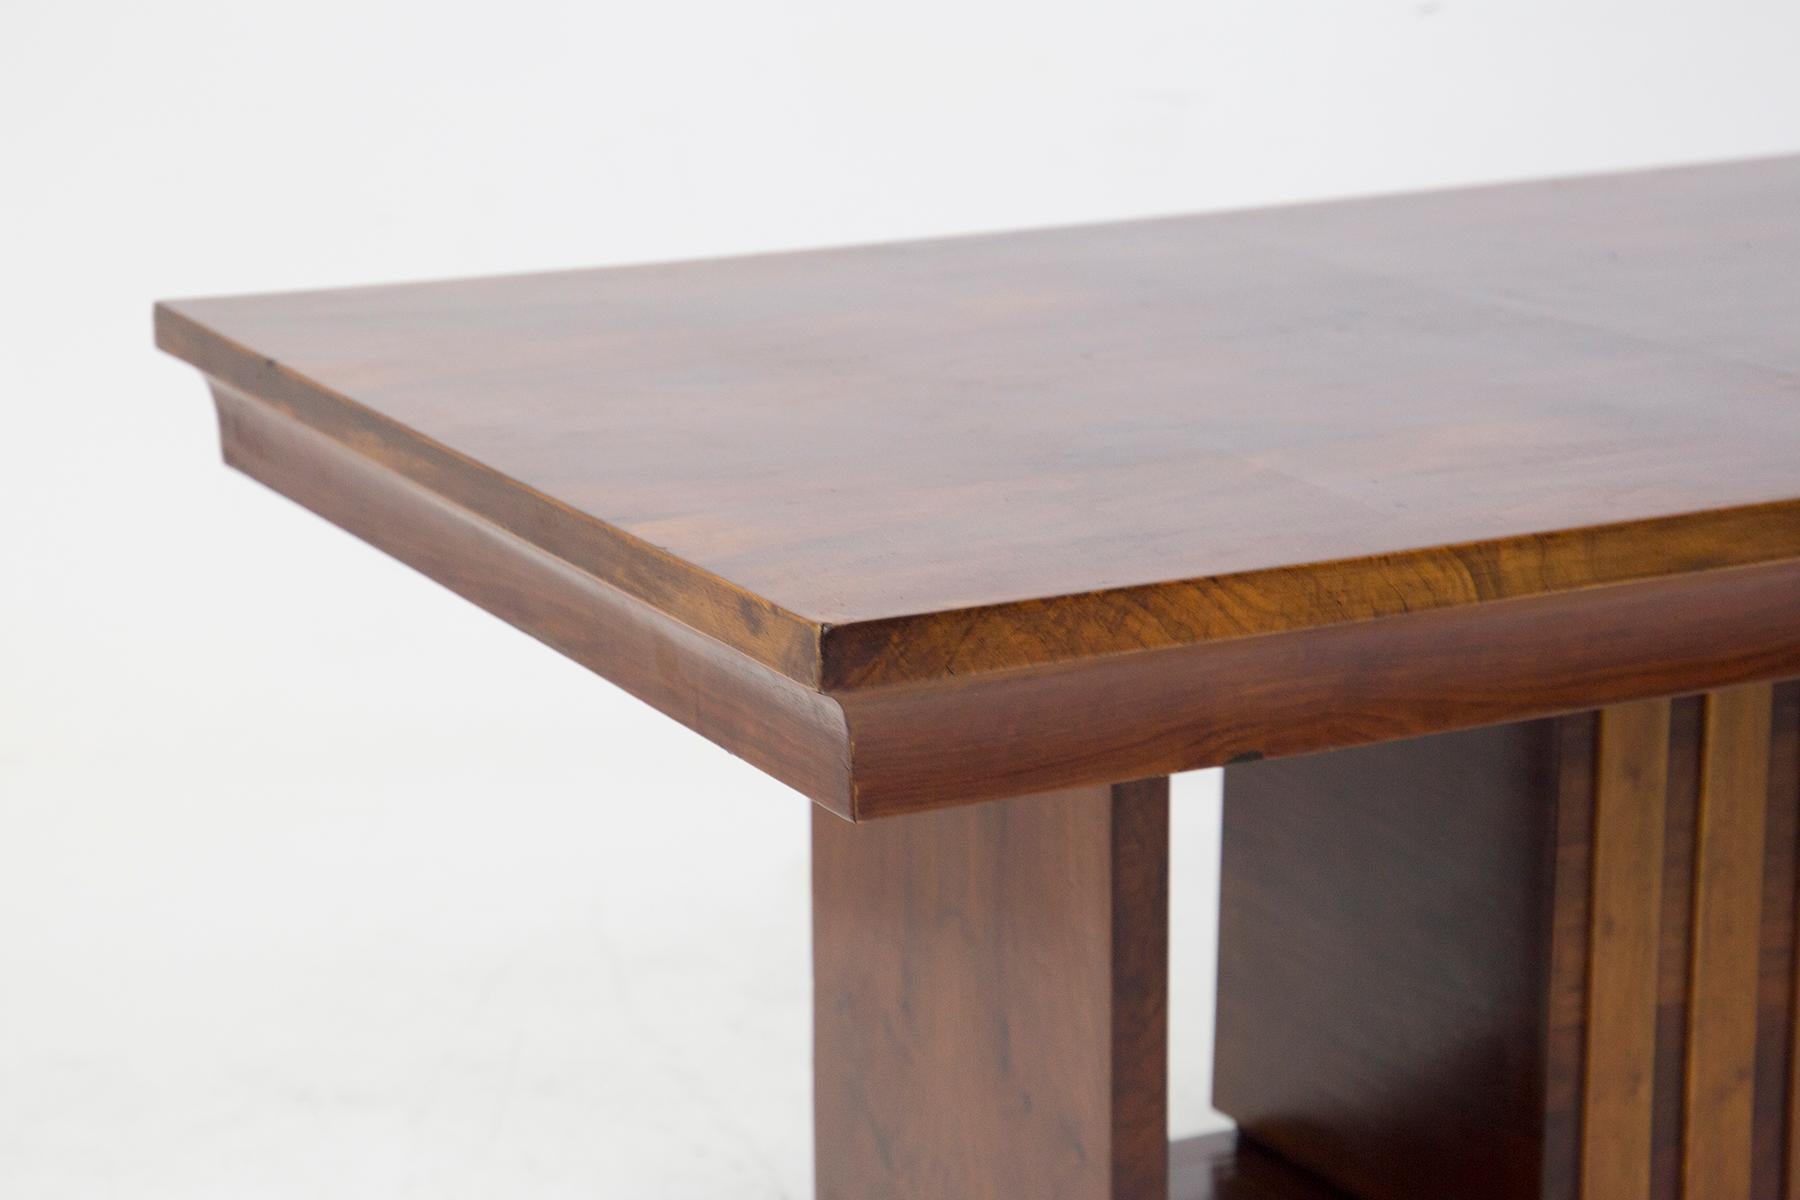 Prächtiger und seltener lackierter Holztisch aus feiner italienischer Fertigung, aus der Zeit des Art déco.
Der Tisch ist komplett aus massivem und wunderschön lackiertem Holz gefertigt.
Es gibt zwei Stützbeine, die jedoch die gesamte Tiefe der